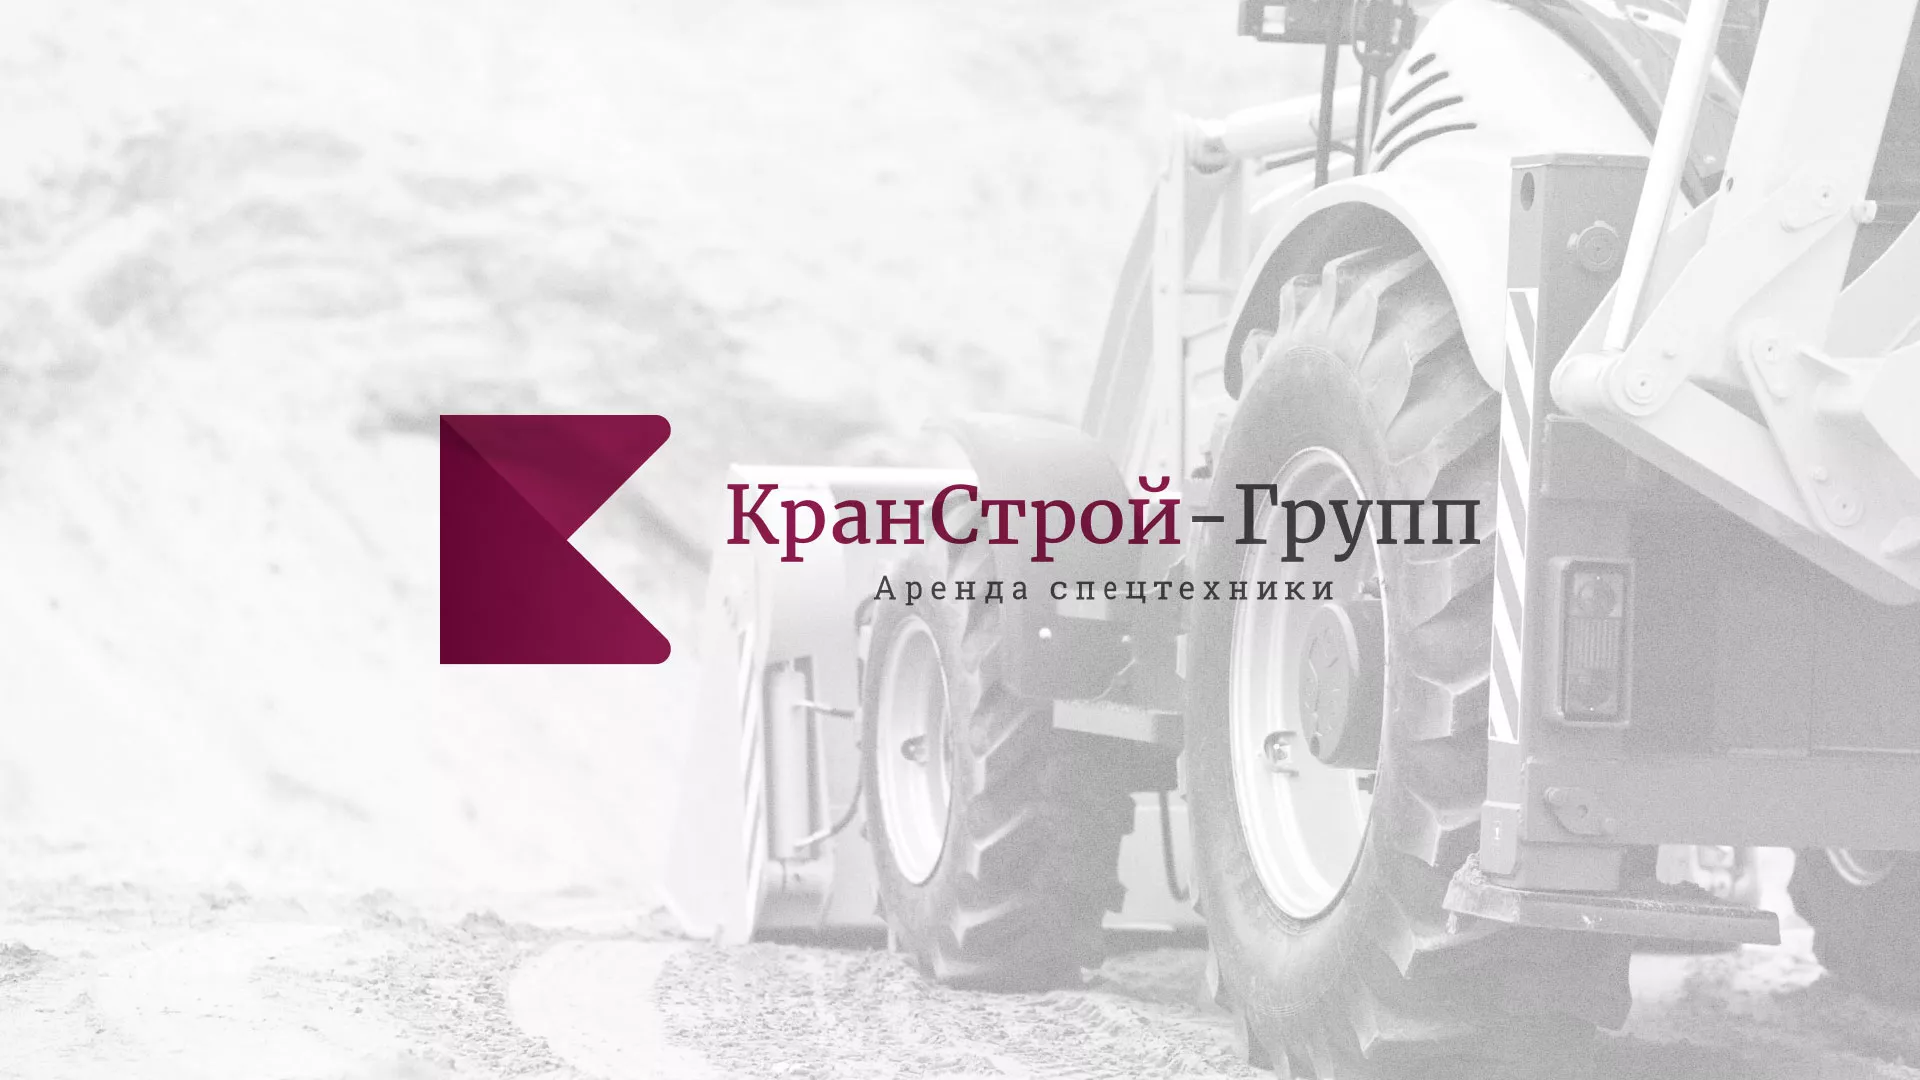 Разработка сайта компании «КранСтрой-Групп» по аренде спецтехники в Славянске-на-Кубани